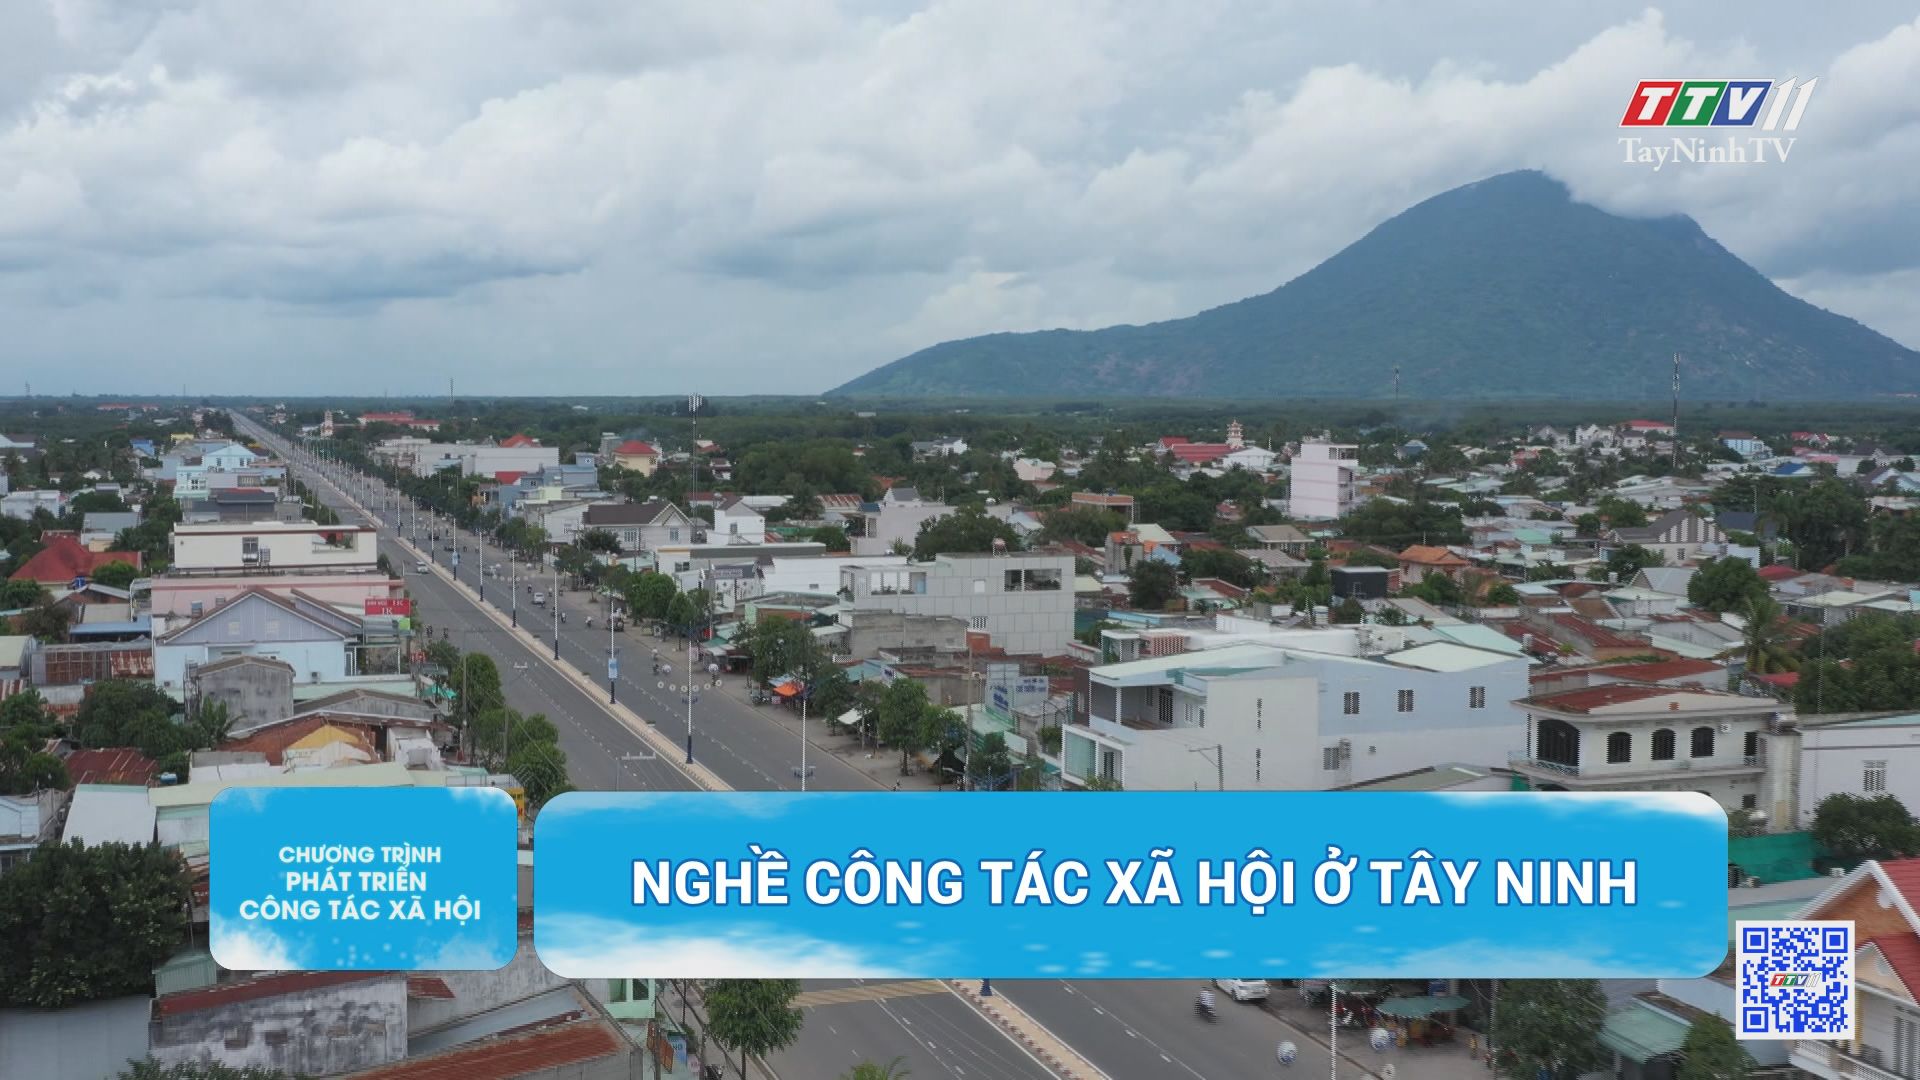 Nghề công tác xã hội ở Tây Ninh | Chương trình phát triển công tác xã hội | TayNinhTV